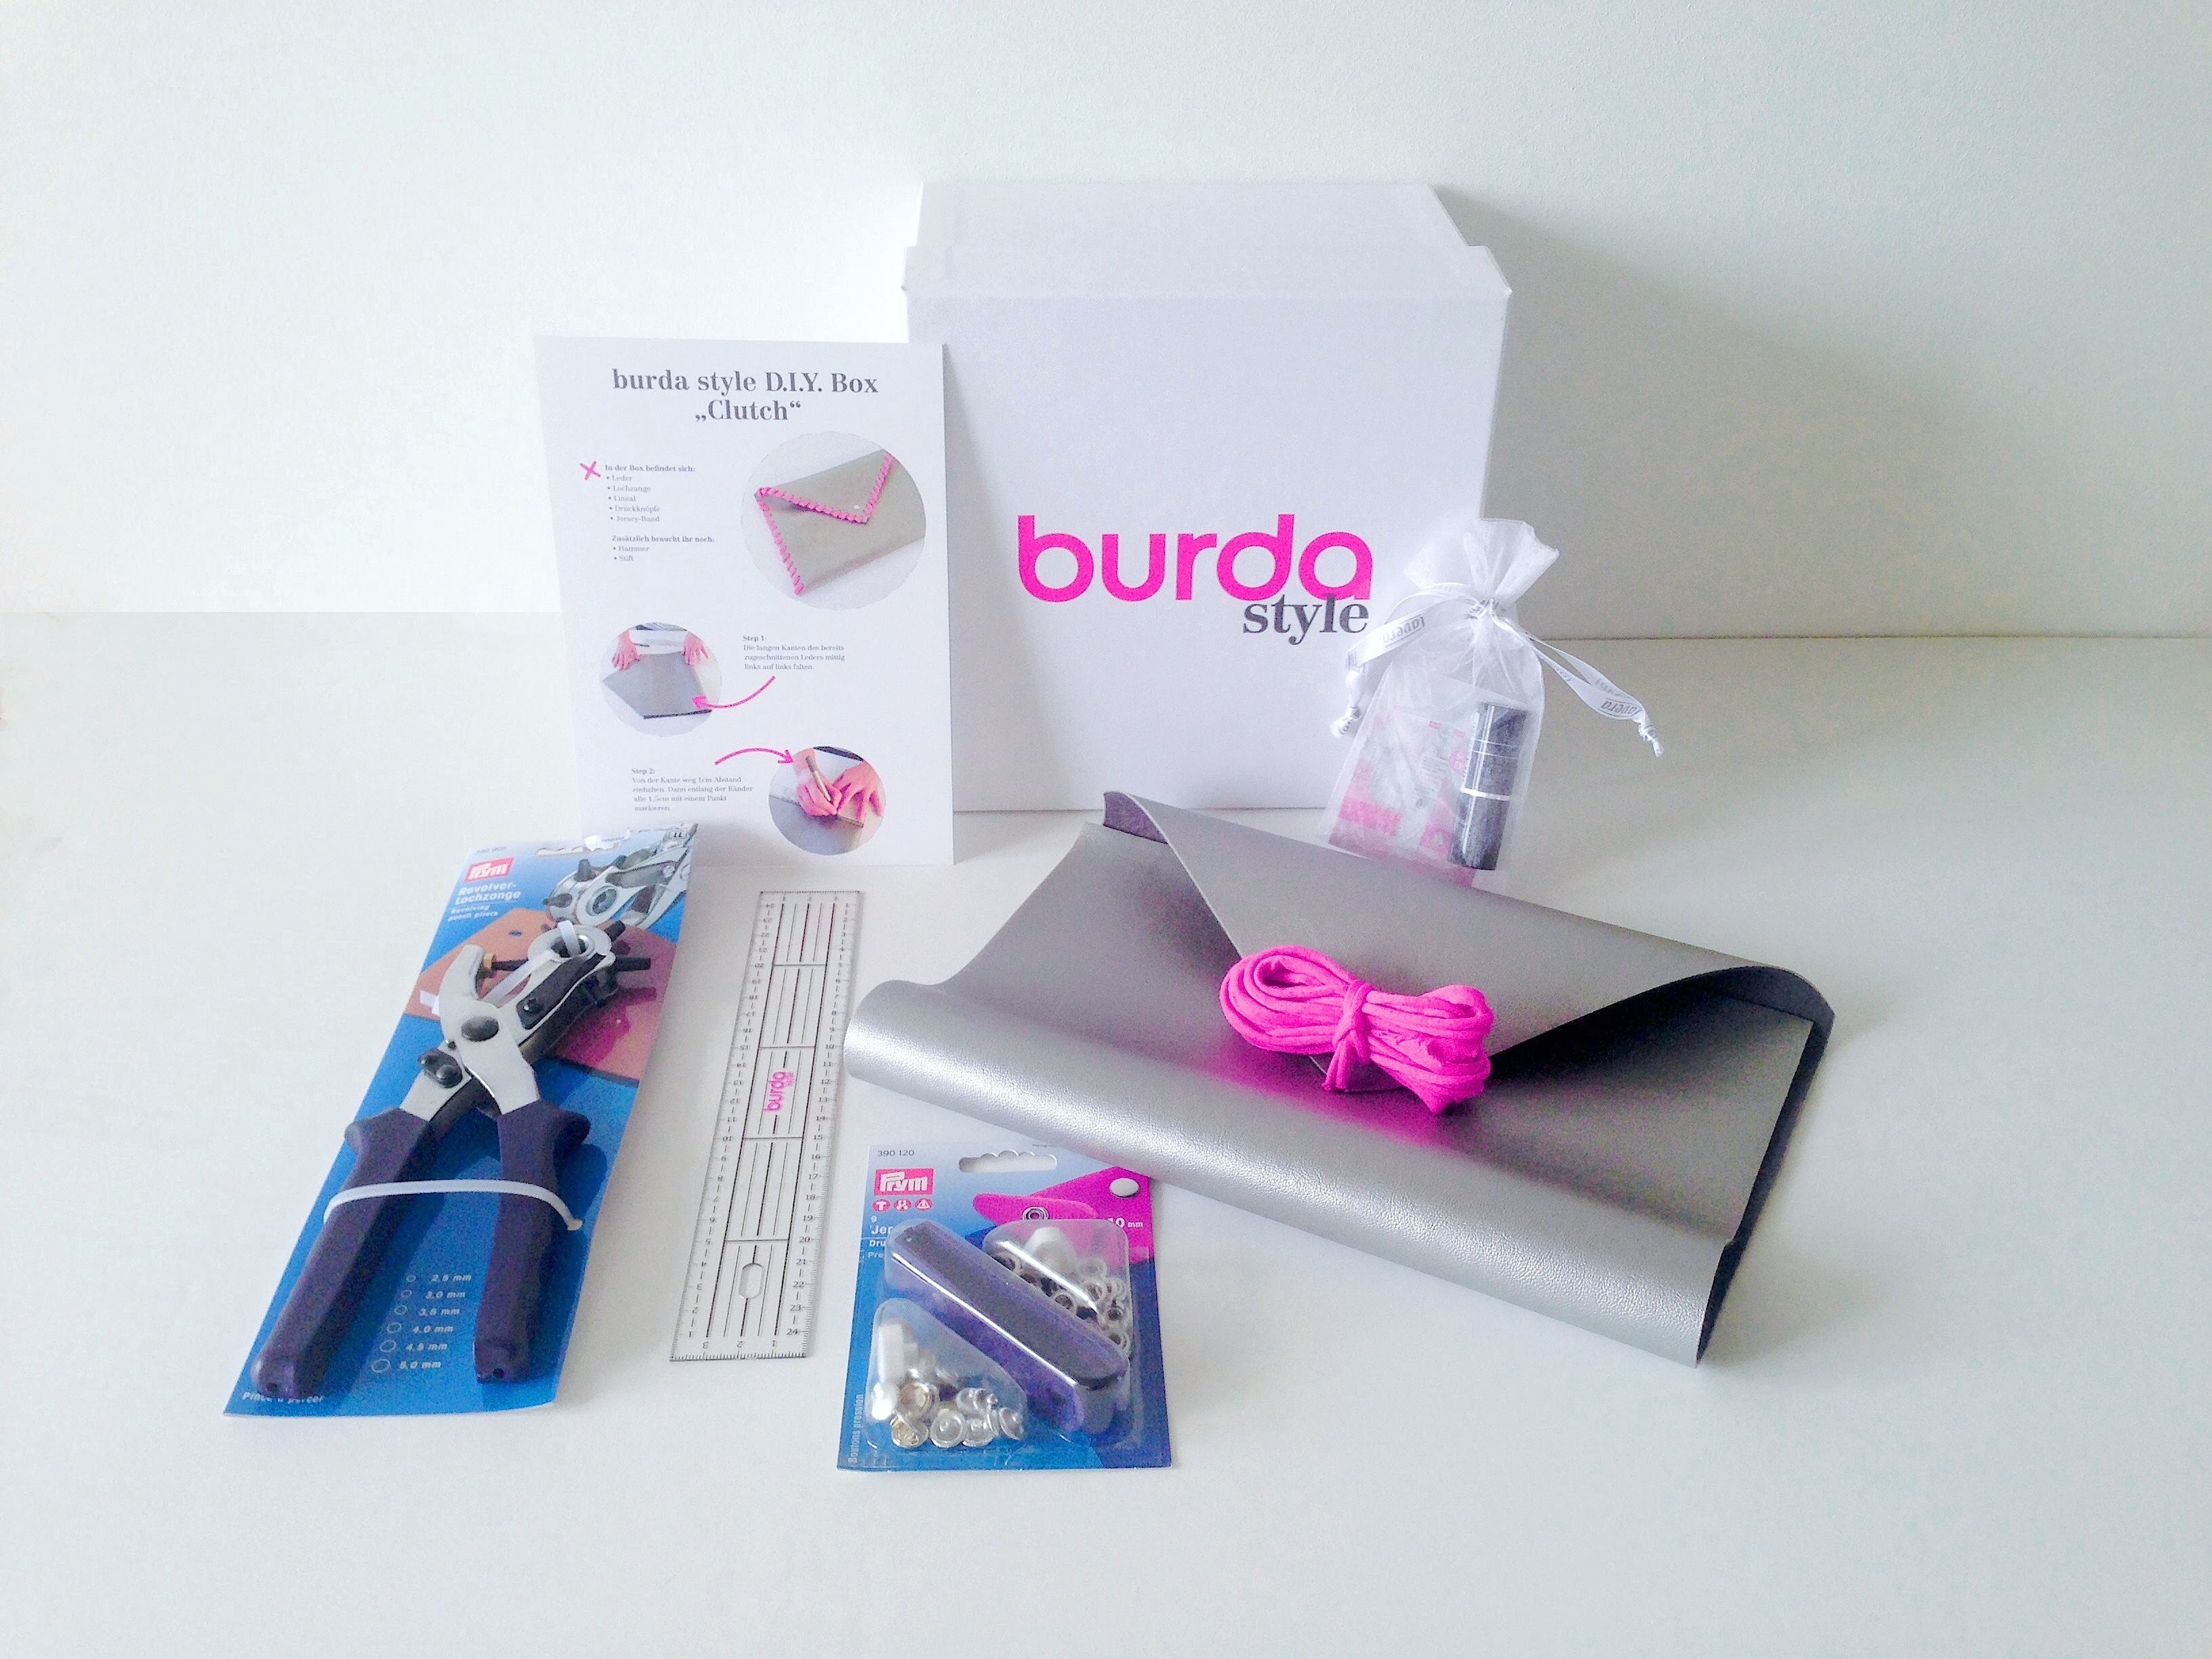 Burda style DIY Box 3 – Clutch